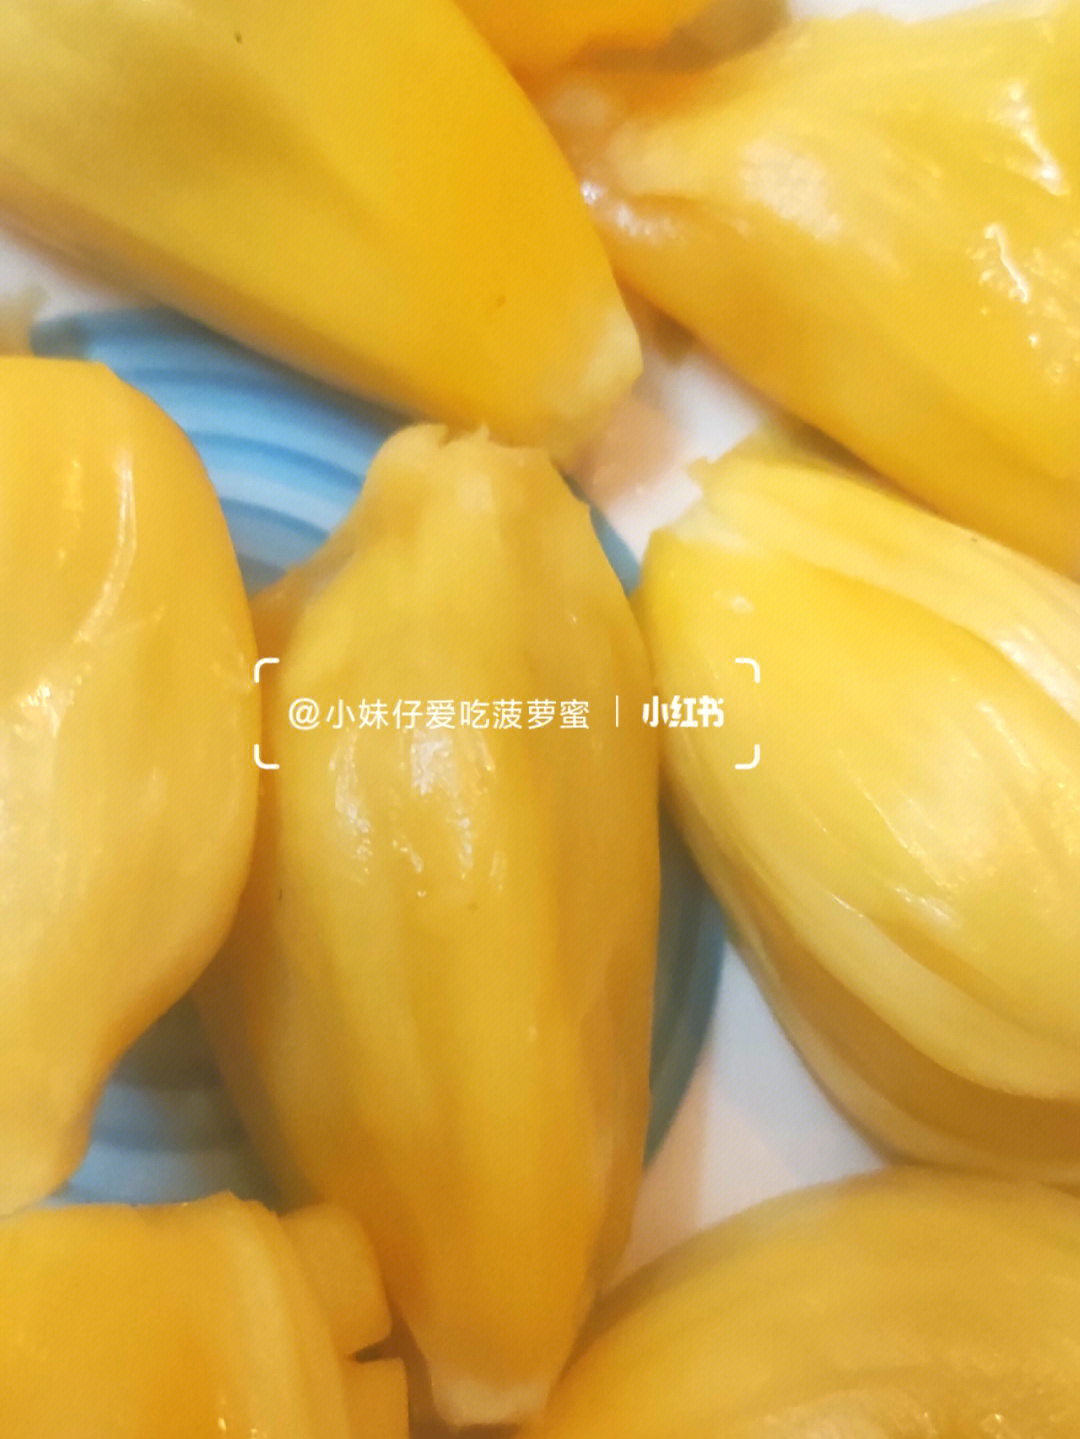 煮熟的菠萝蜜核麻嘴图片